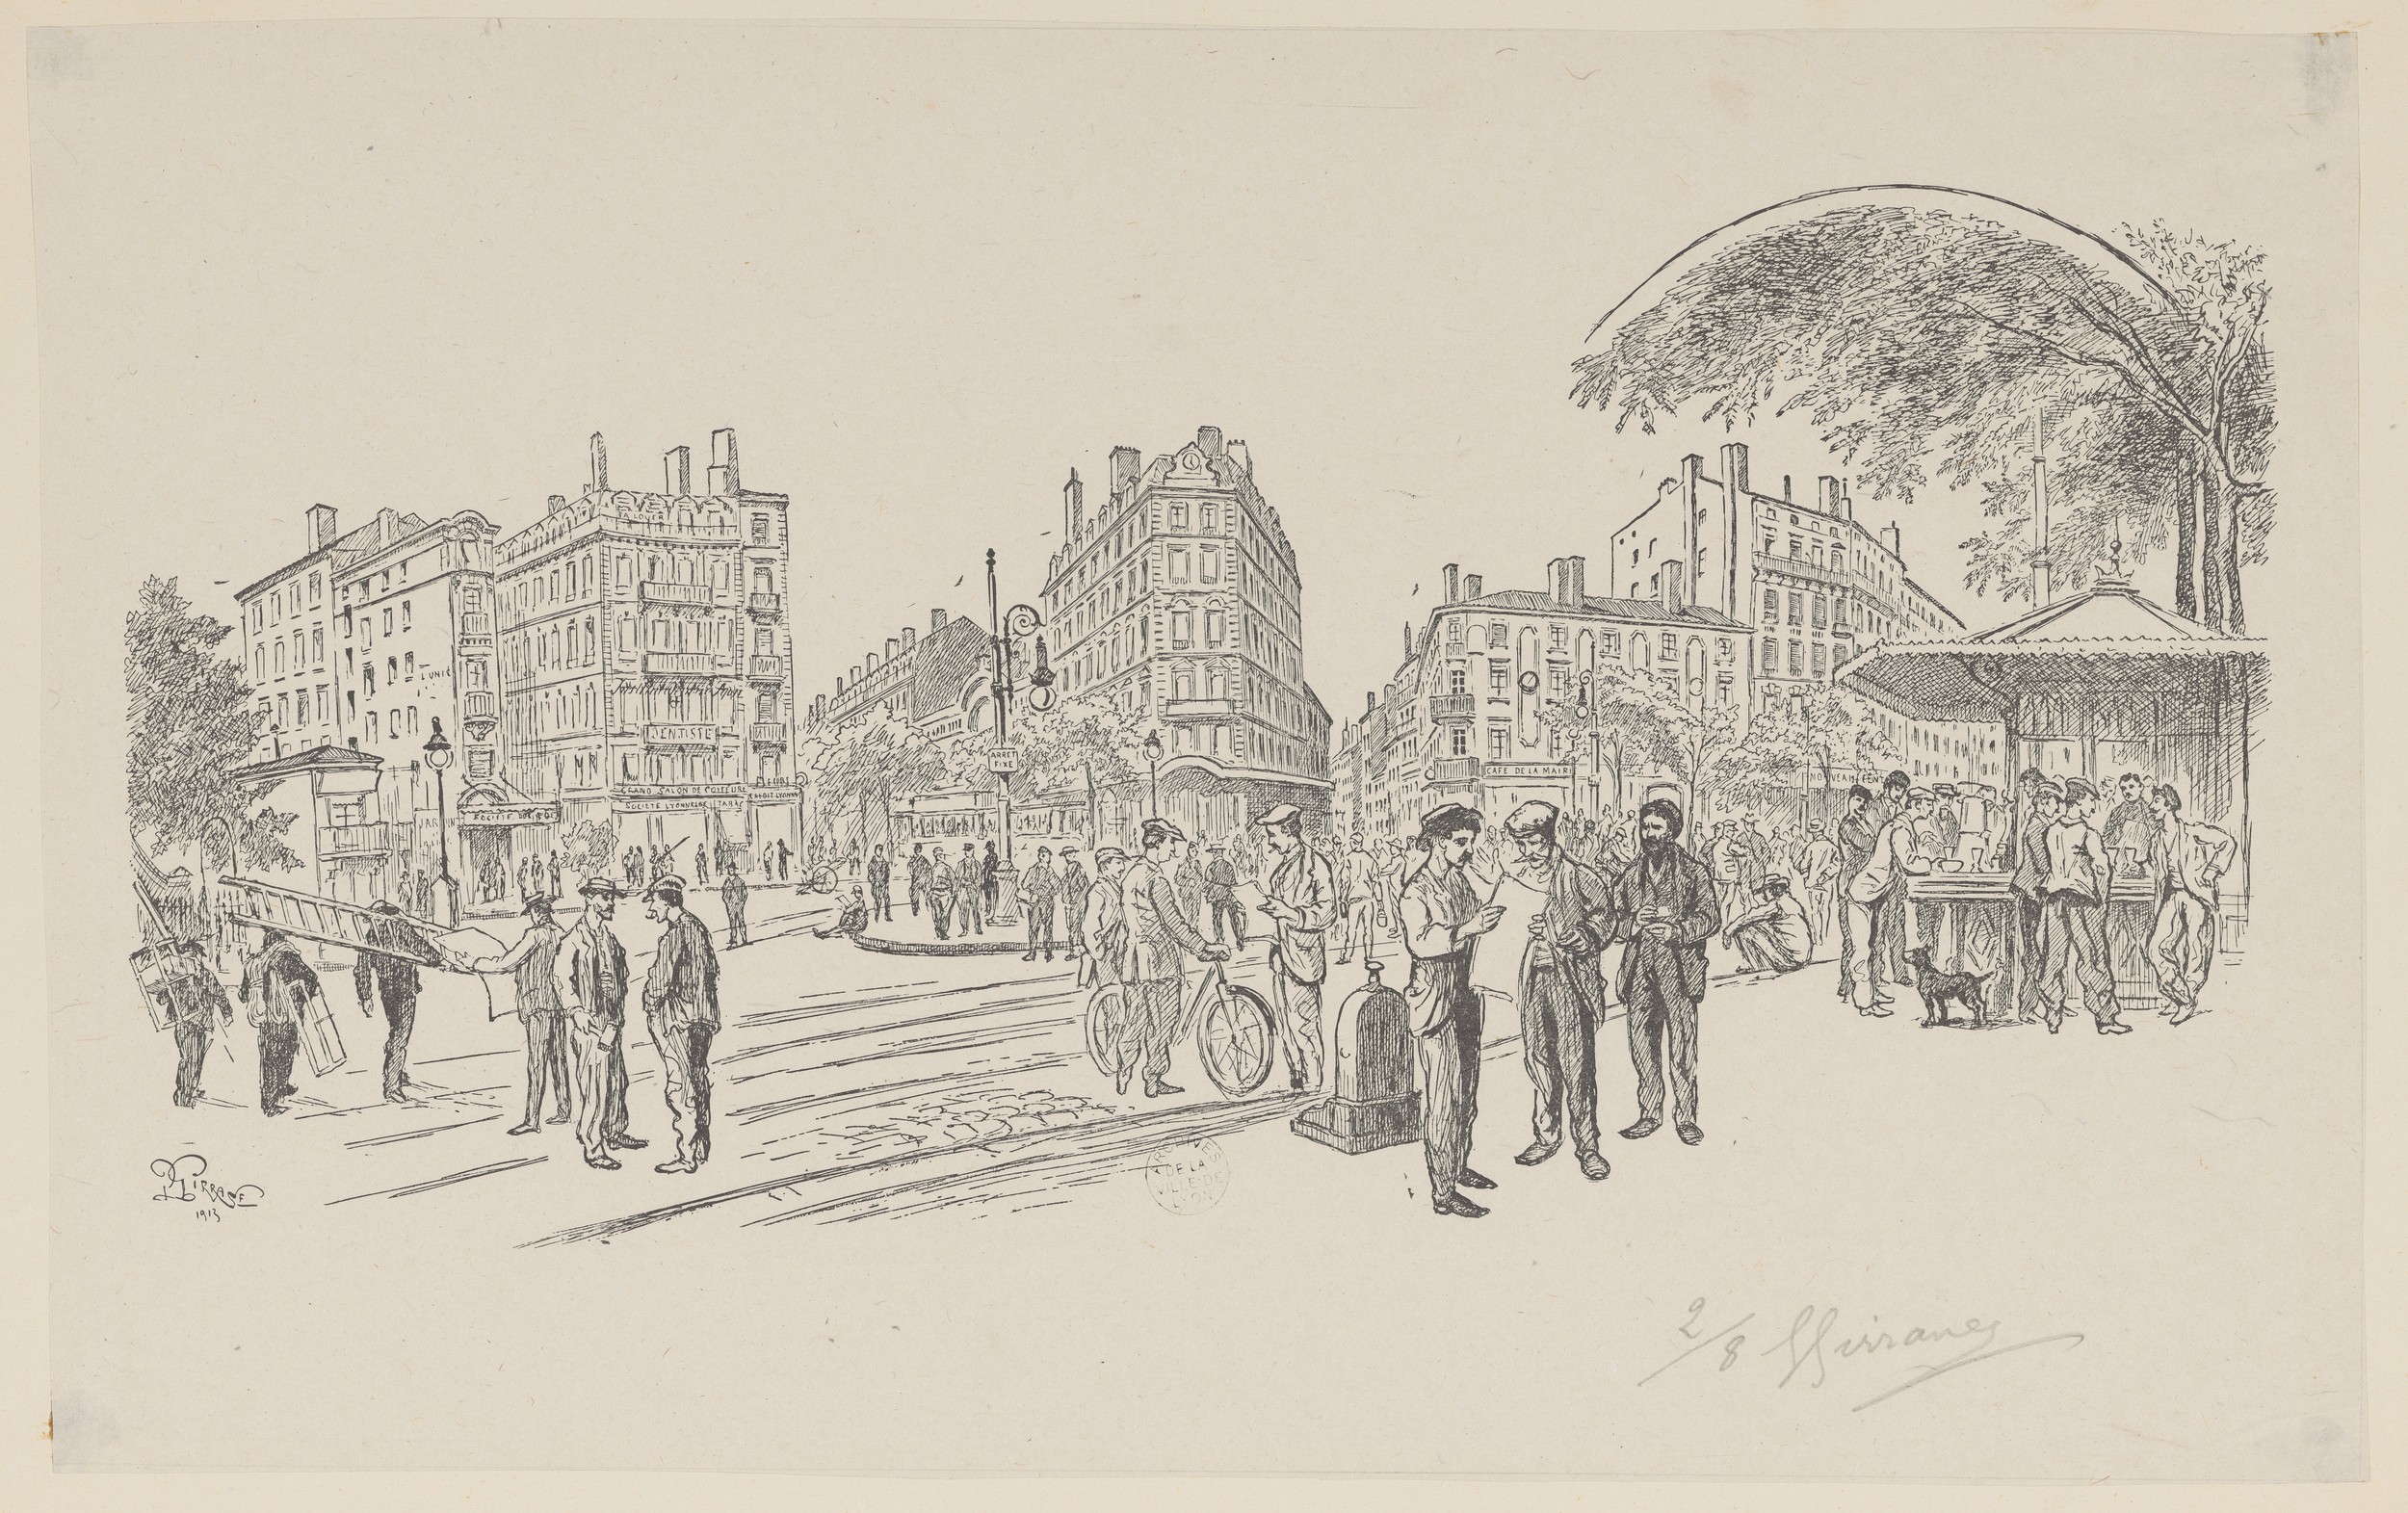 Place du Pont : estampe NB et crayon noir par Girrane (1913, cote : 63FI/212)